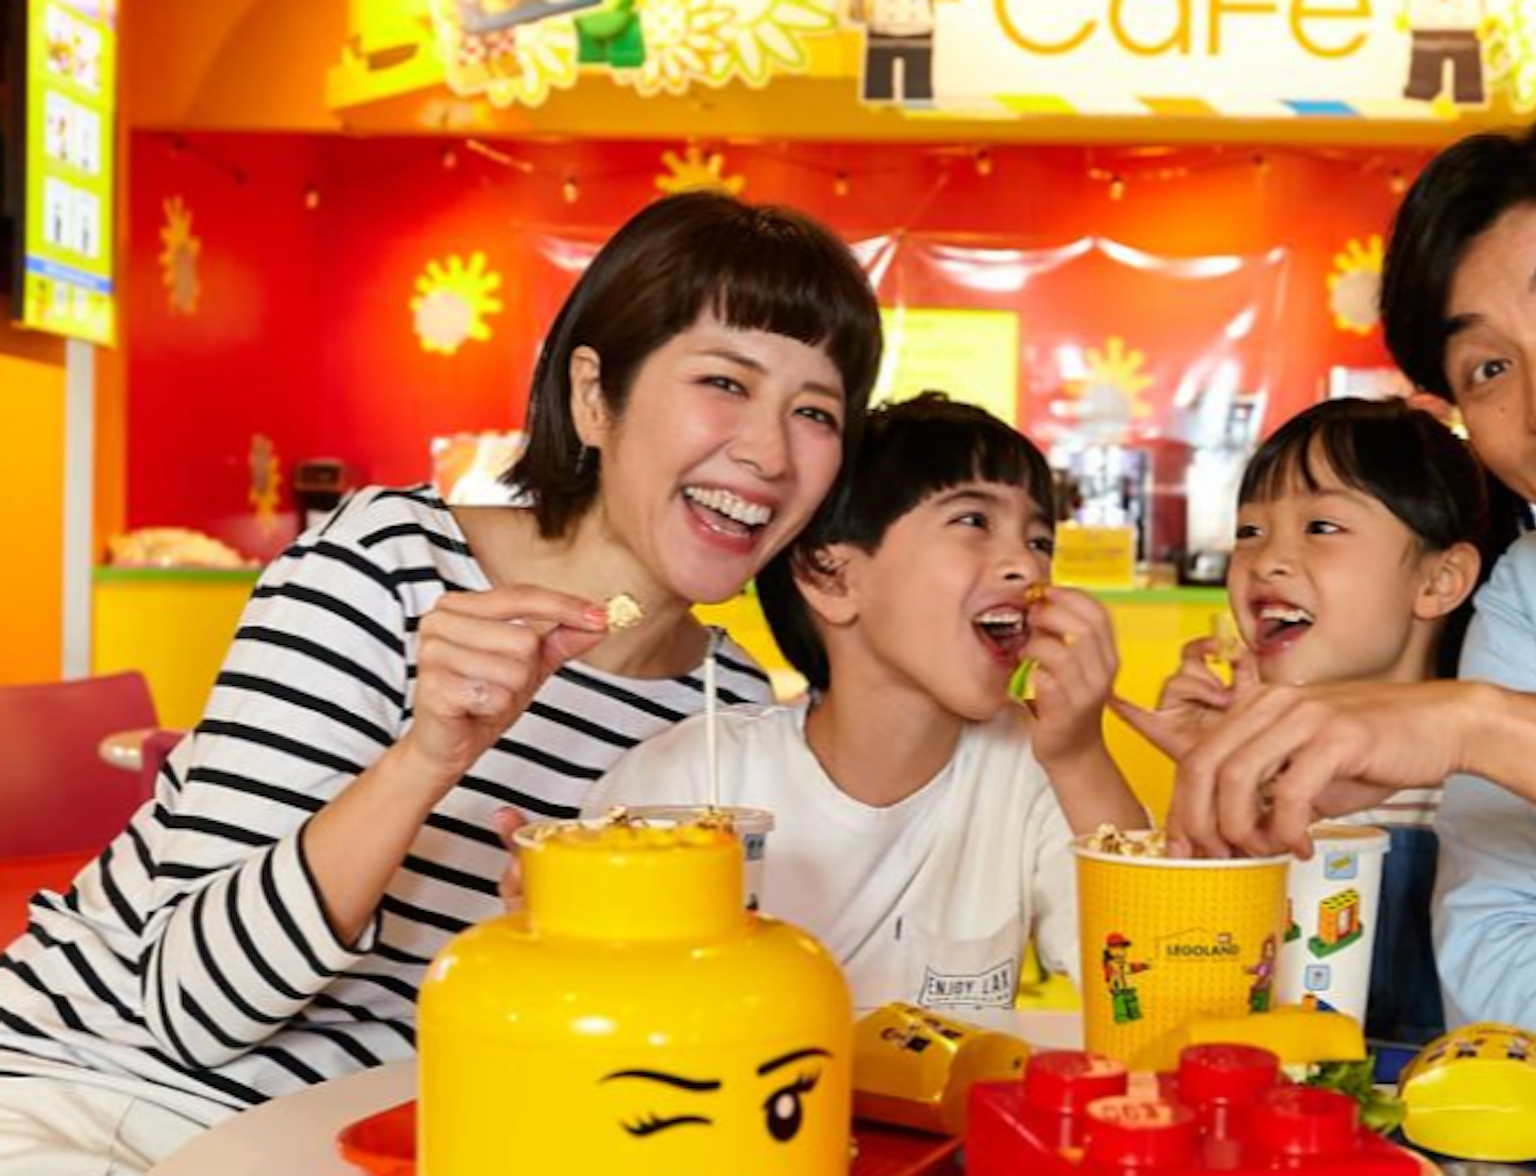 Tokyo Legoland Discovery Center